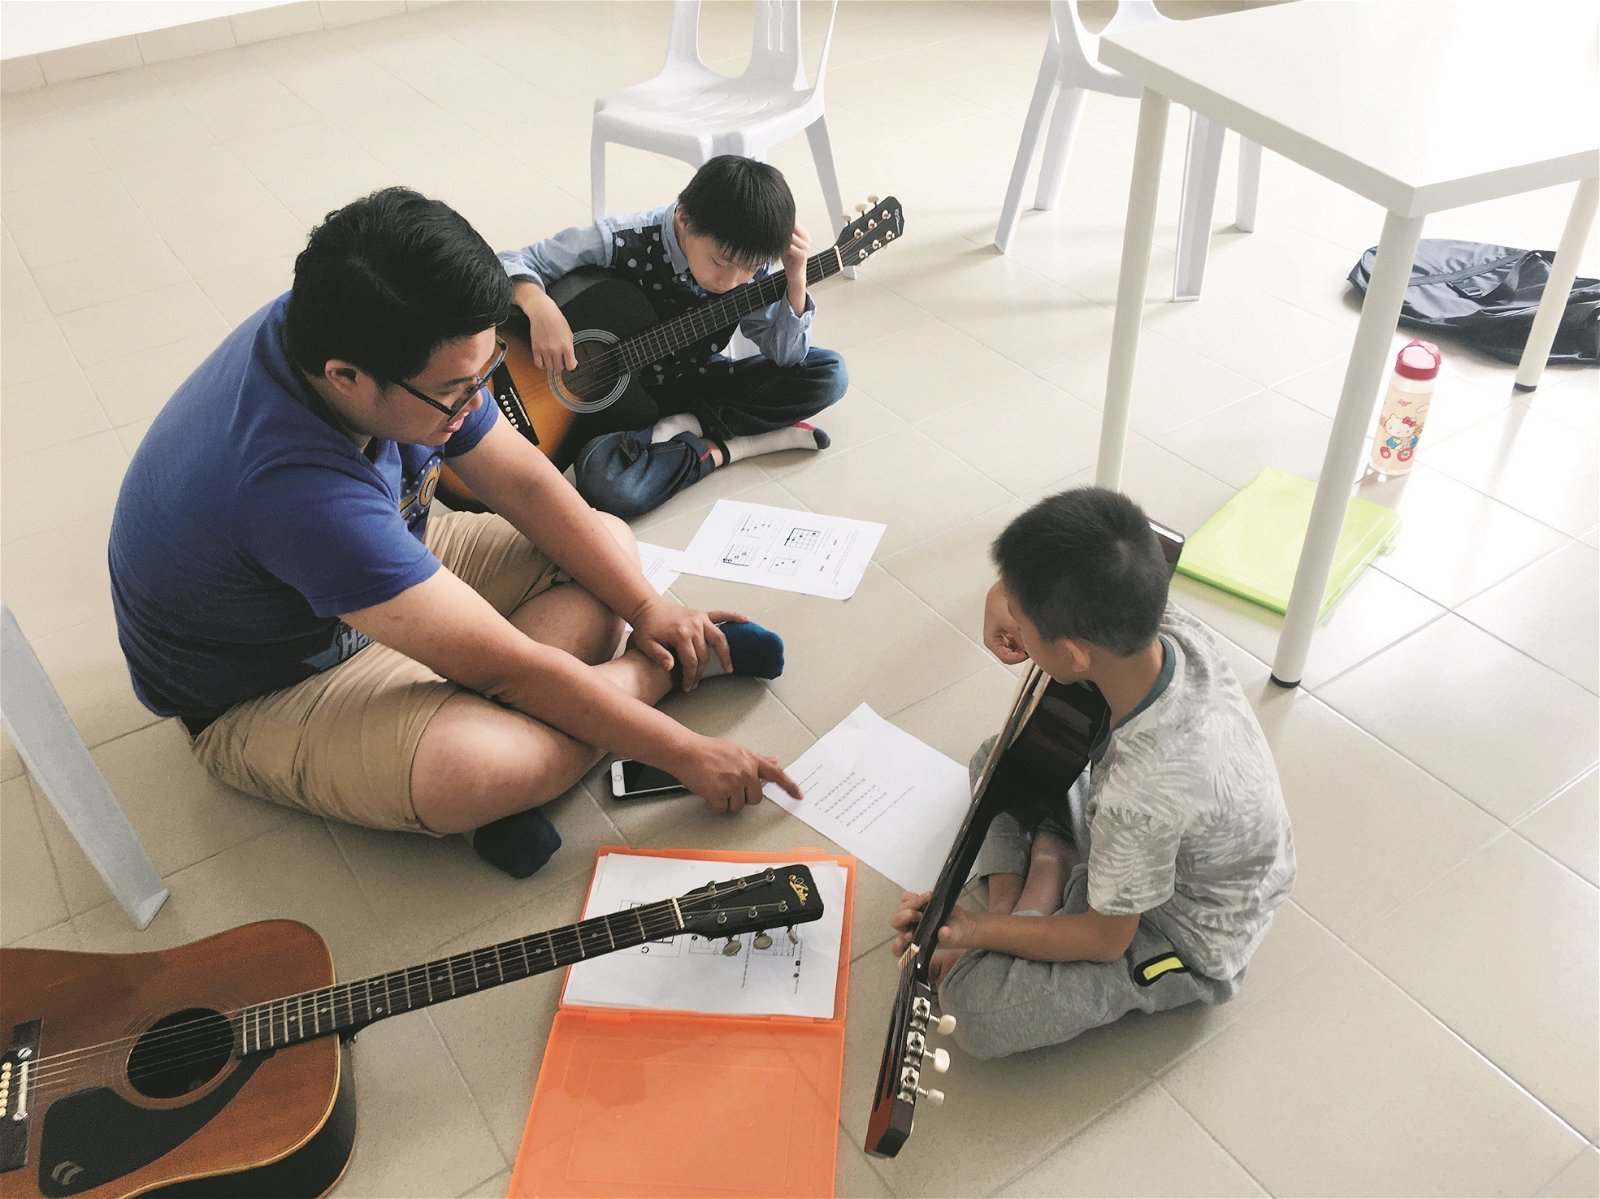 中心也提供免费的音乐班，启发小孩课余的学习兴趣。